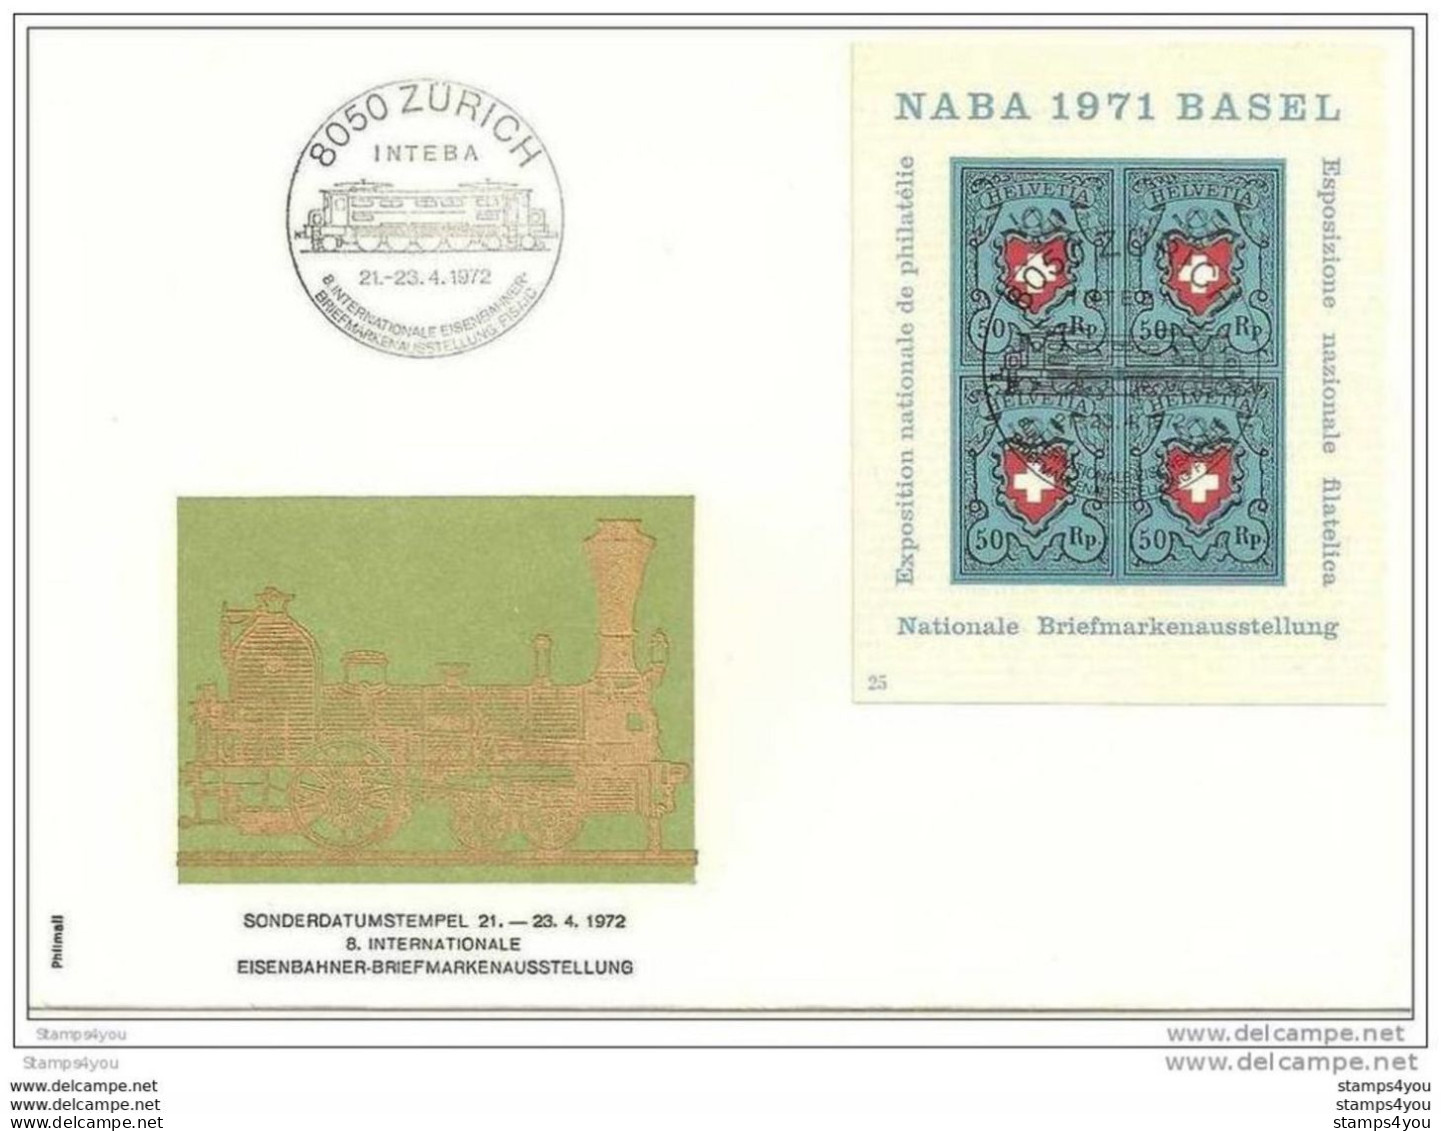 190 - 60 - Enveloppe Avec Oblit Spécaile "Inteba" Zürich 1972 - Marcophilie